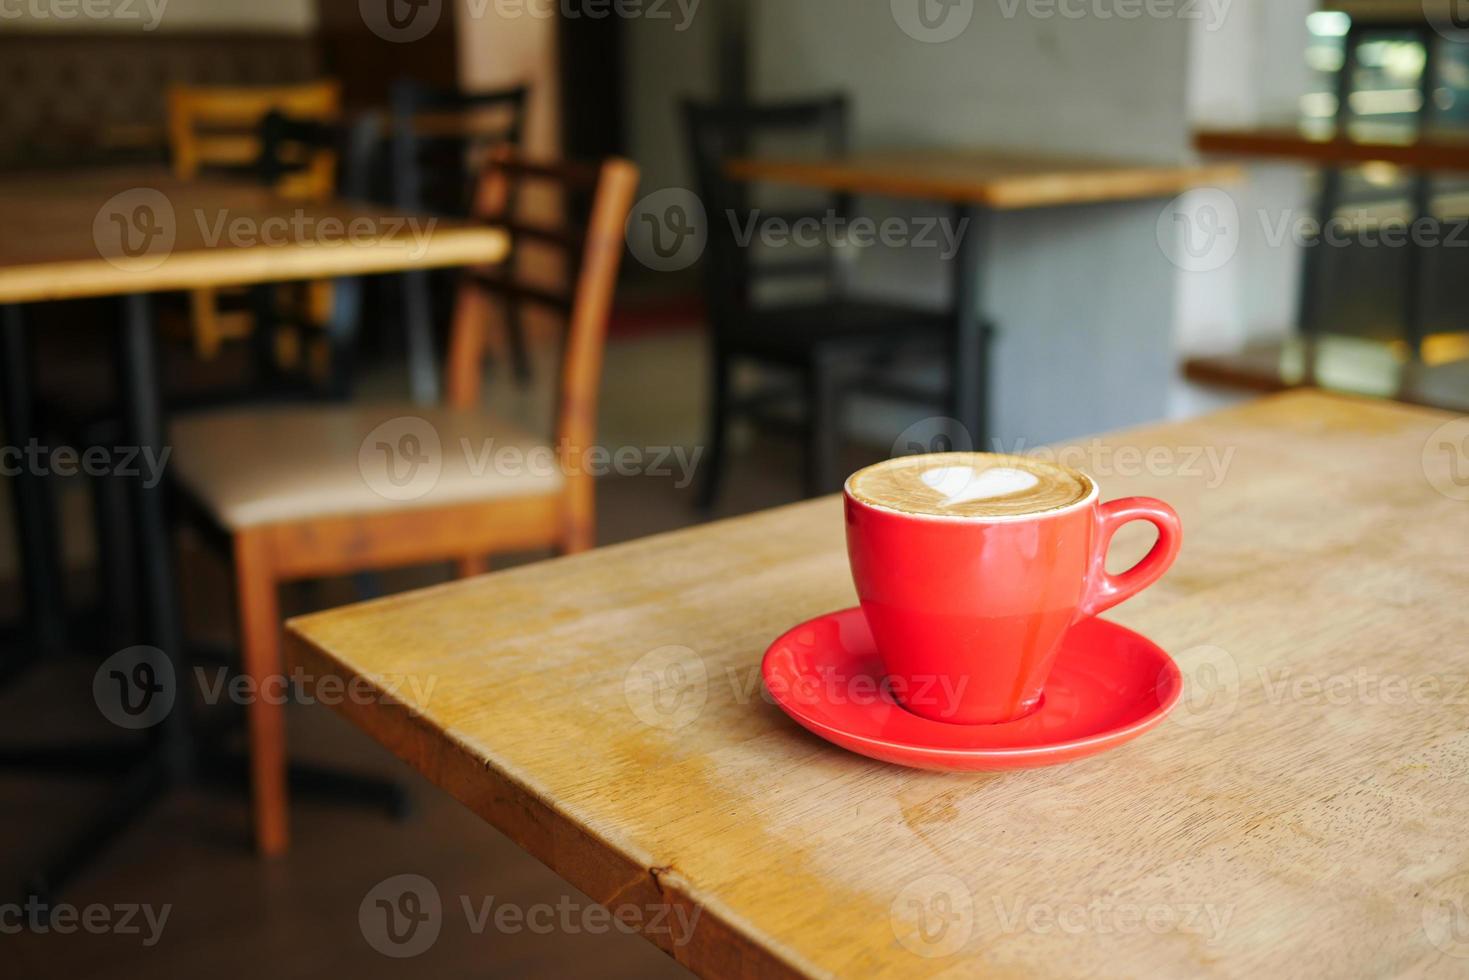 eine Tasse späten Kaffee mit Blumenform-Design oben im Café foto